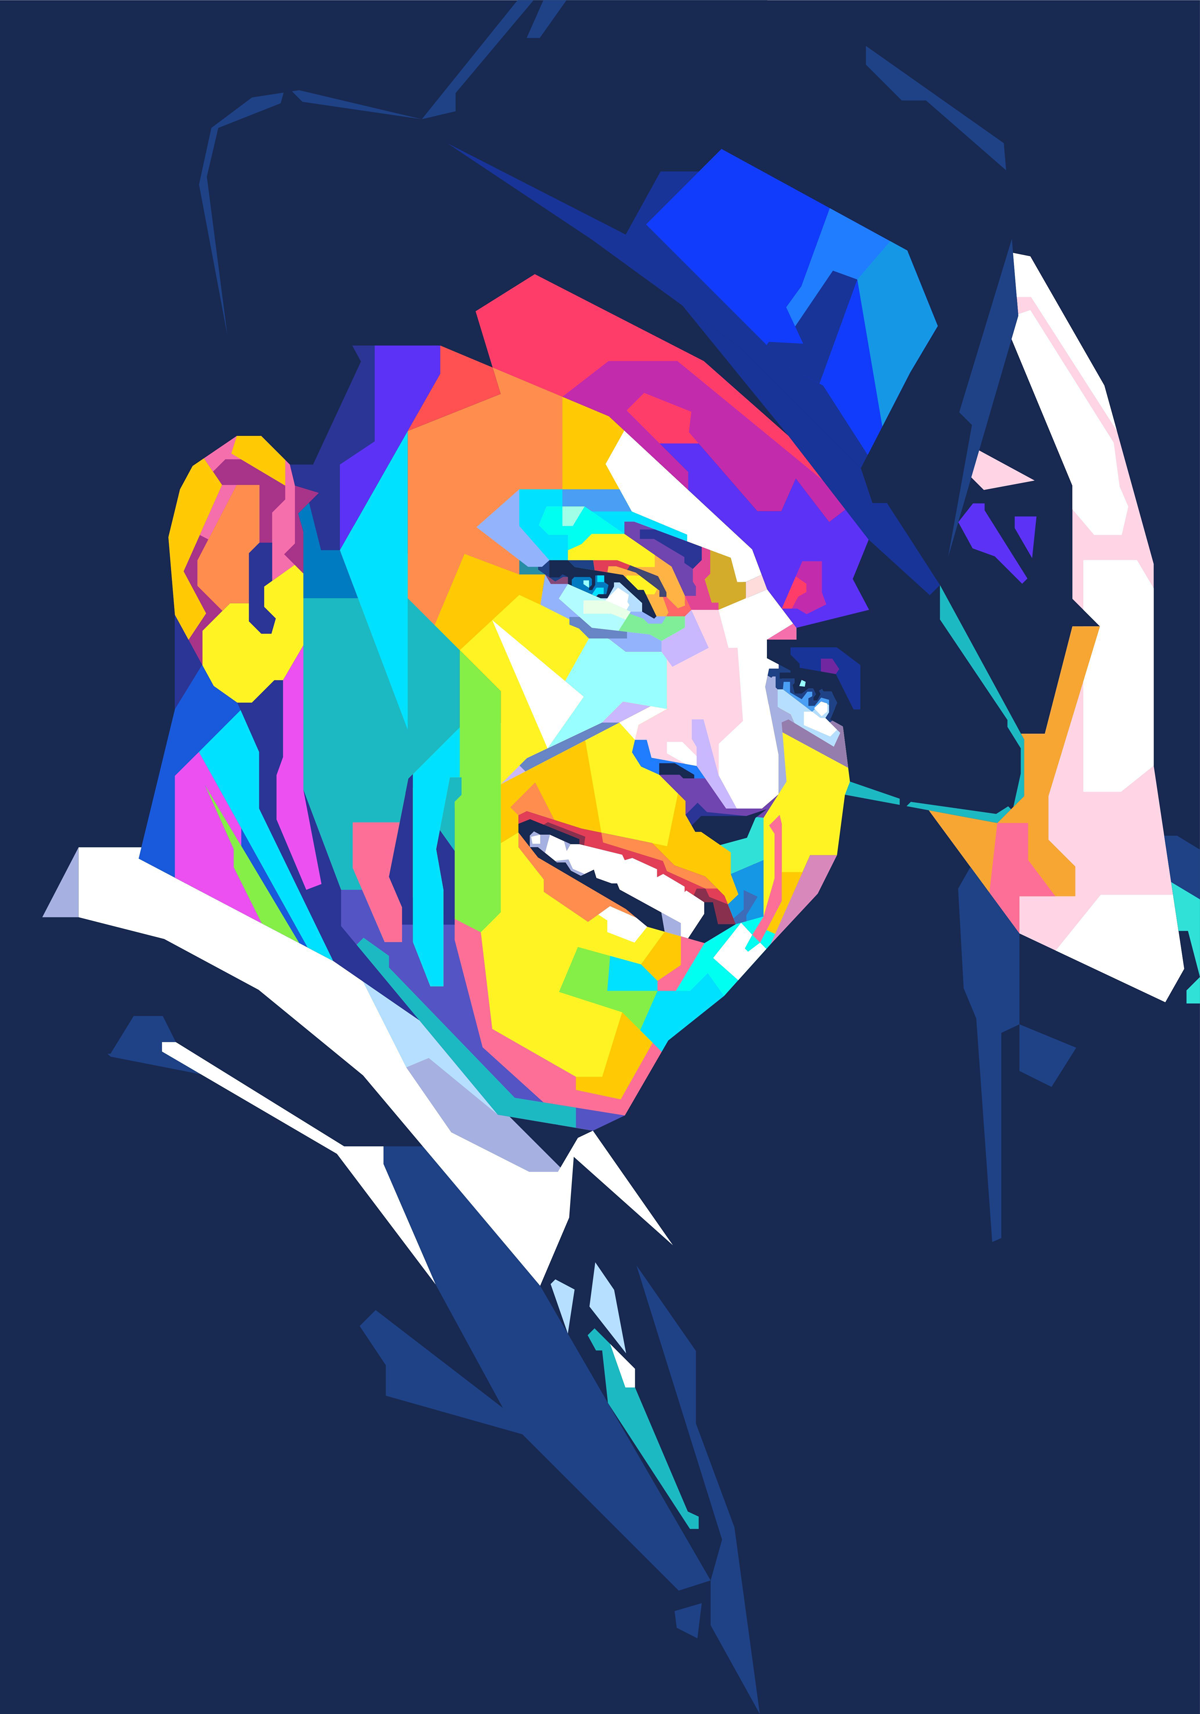 Torbjørn Endrerud "Frank Sinatra"